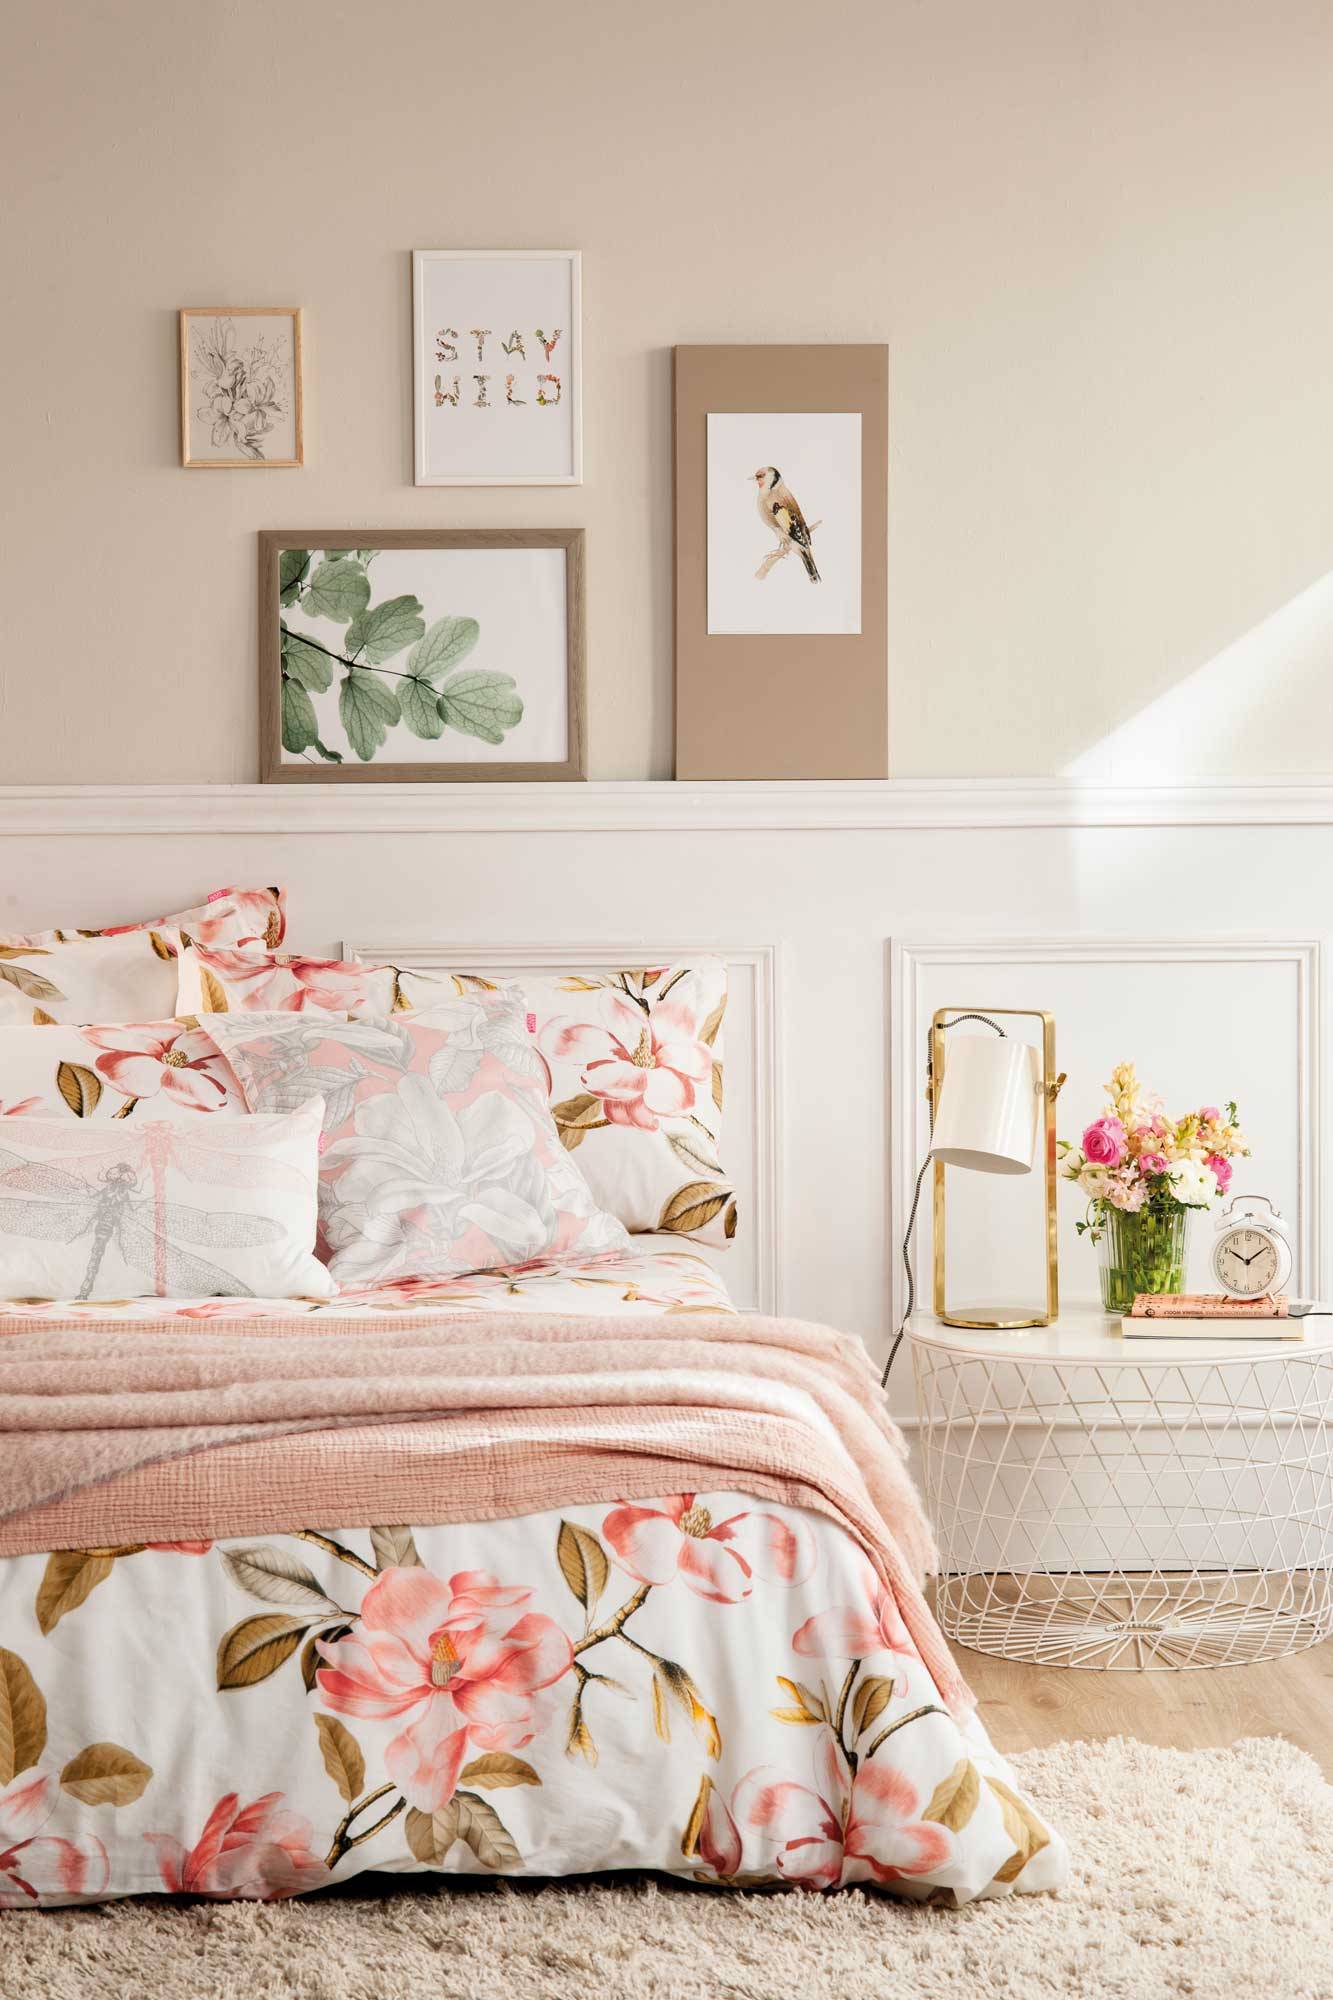 dormitorio-estilo-romantico-con-ropa-de-cama-en-neutros-y-rosa-00508333